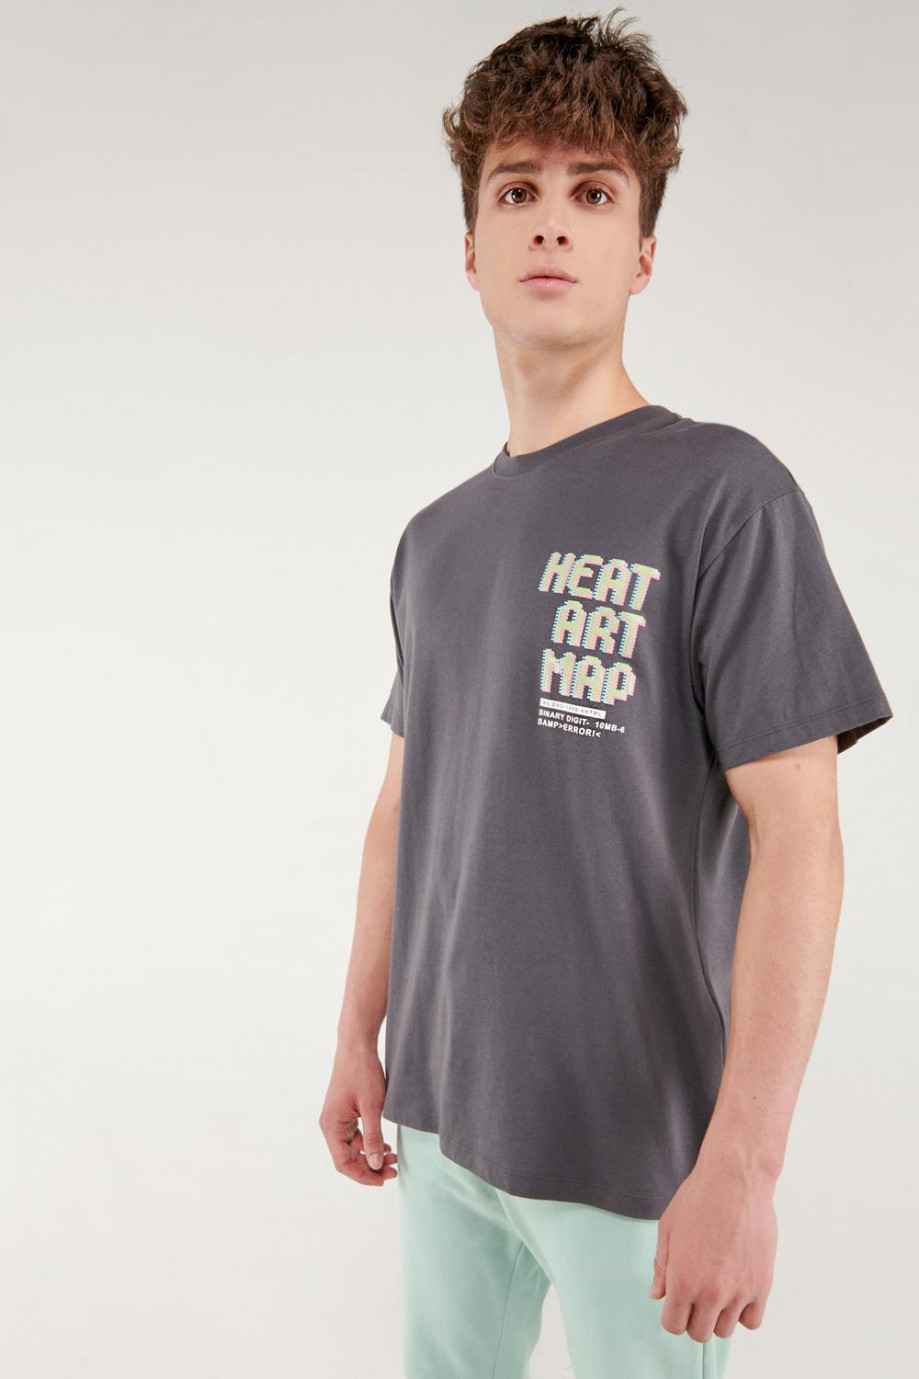 Camiseta unicolor manga corta con letras y diseños estampados